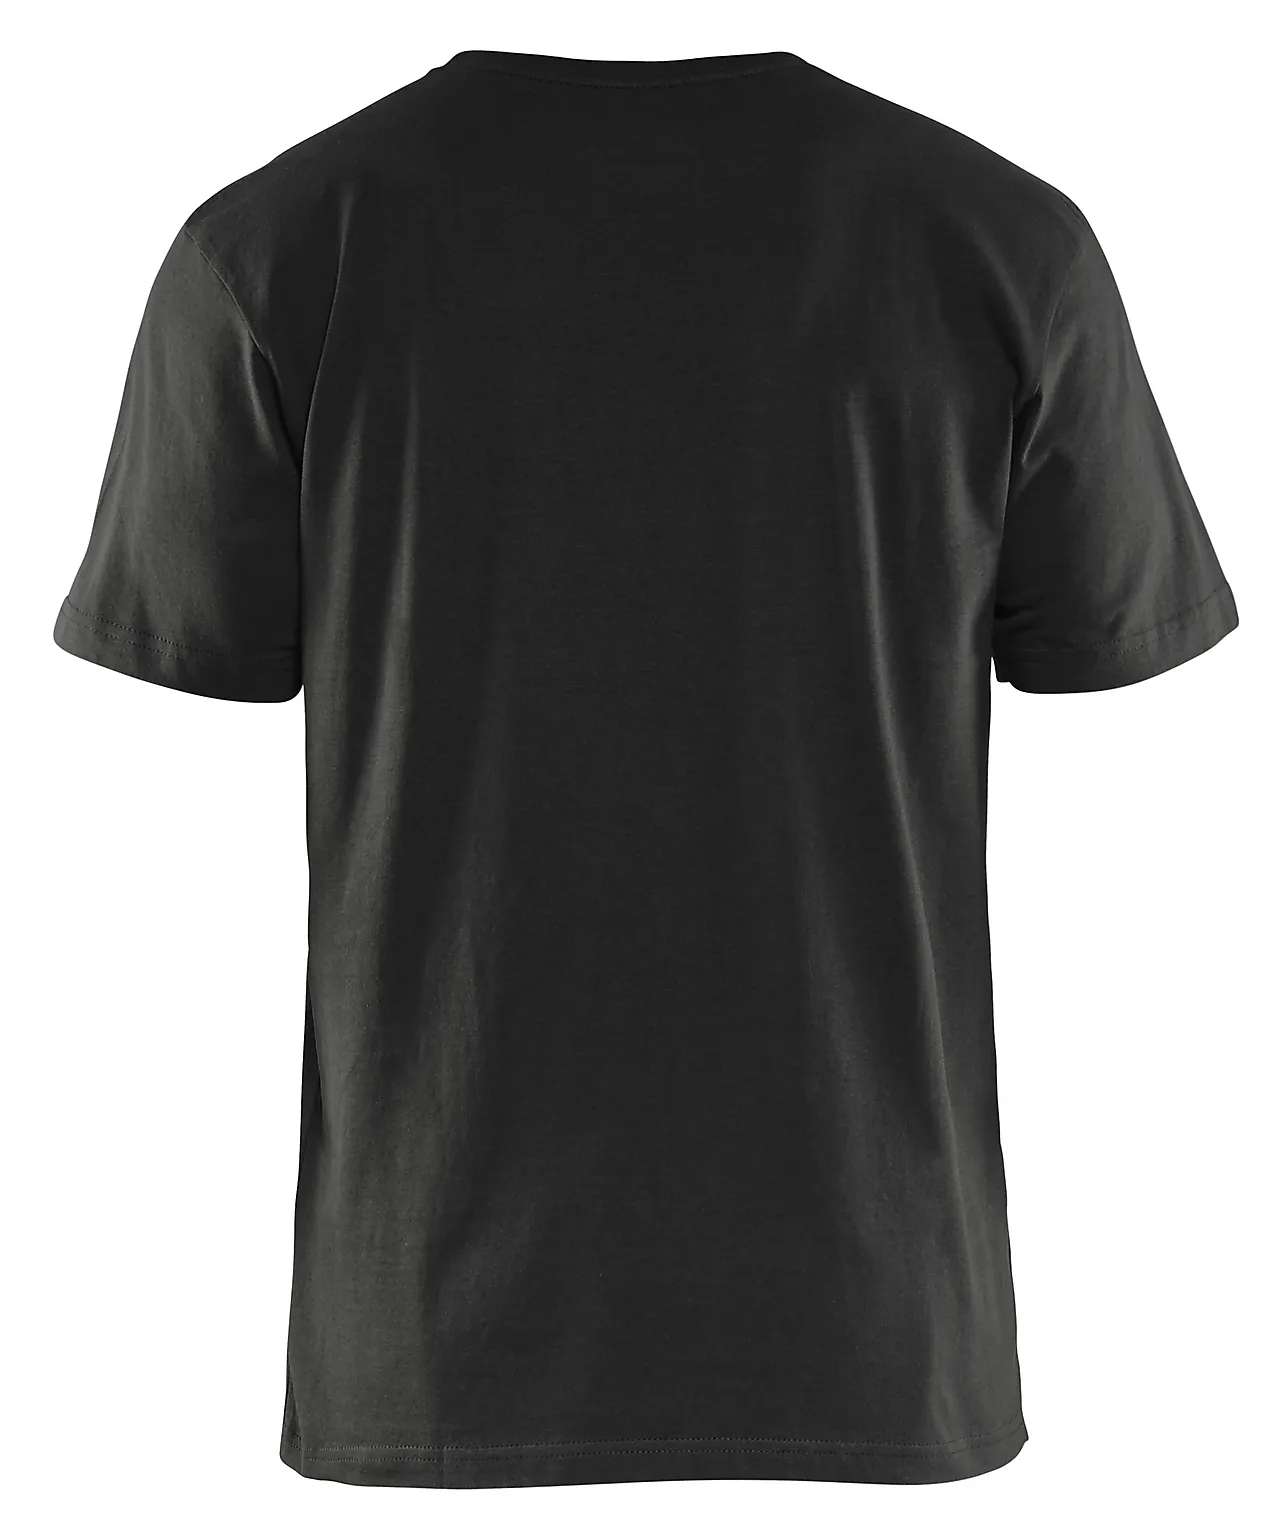 T-skjorte 5 pk 3325104299005xl svart null - null - 3 - Miniatyr